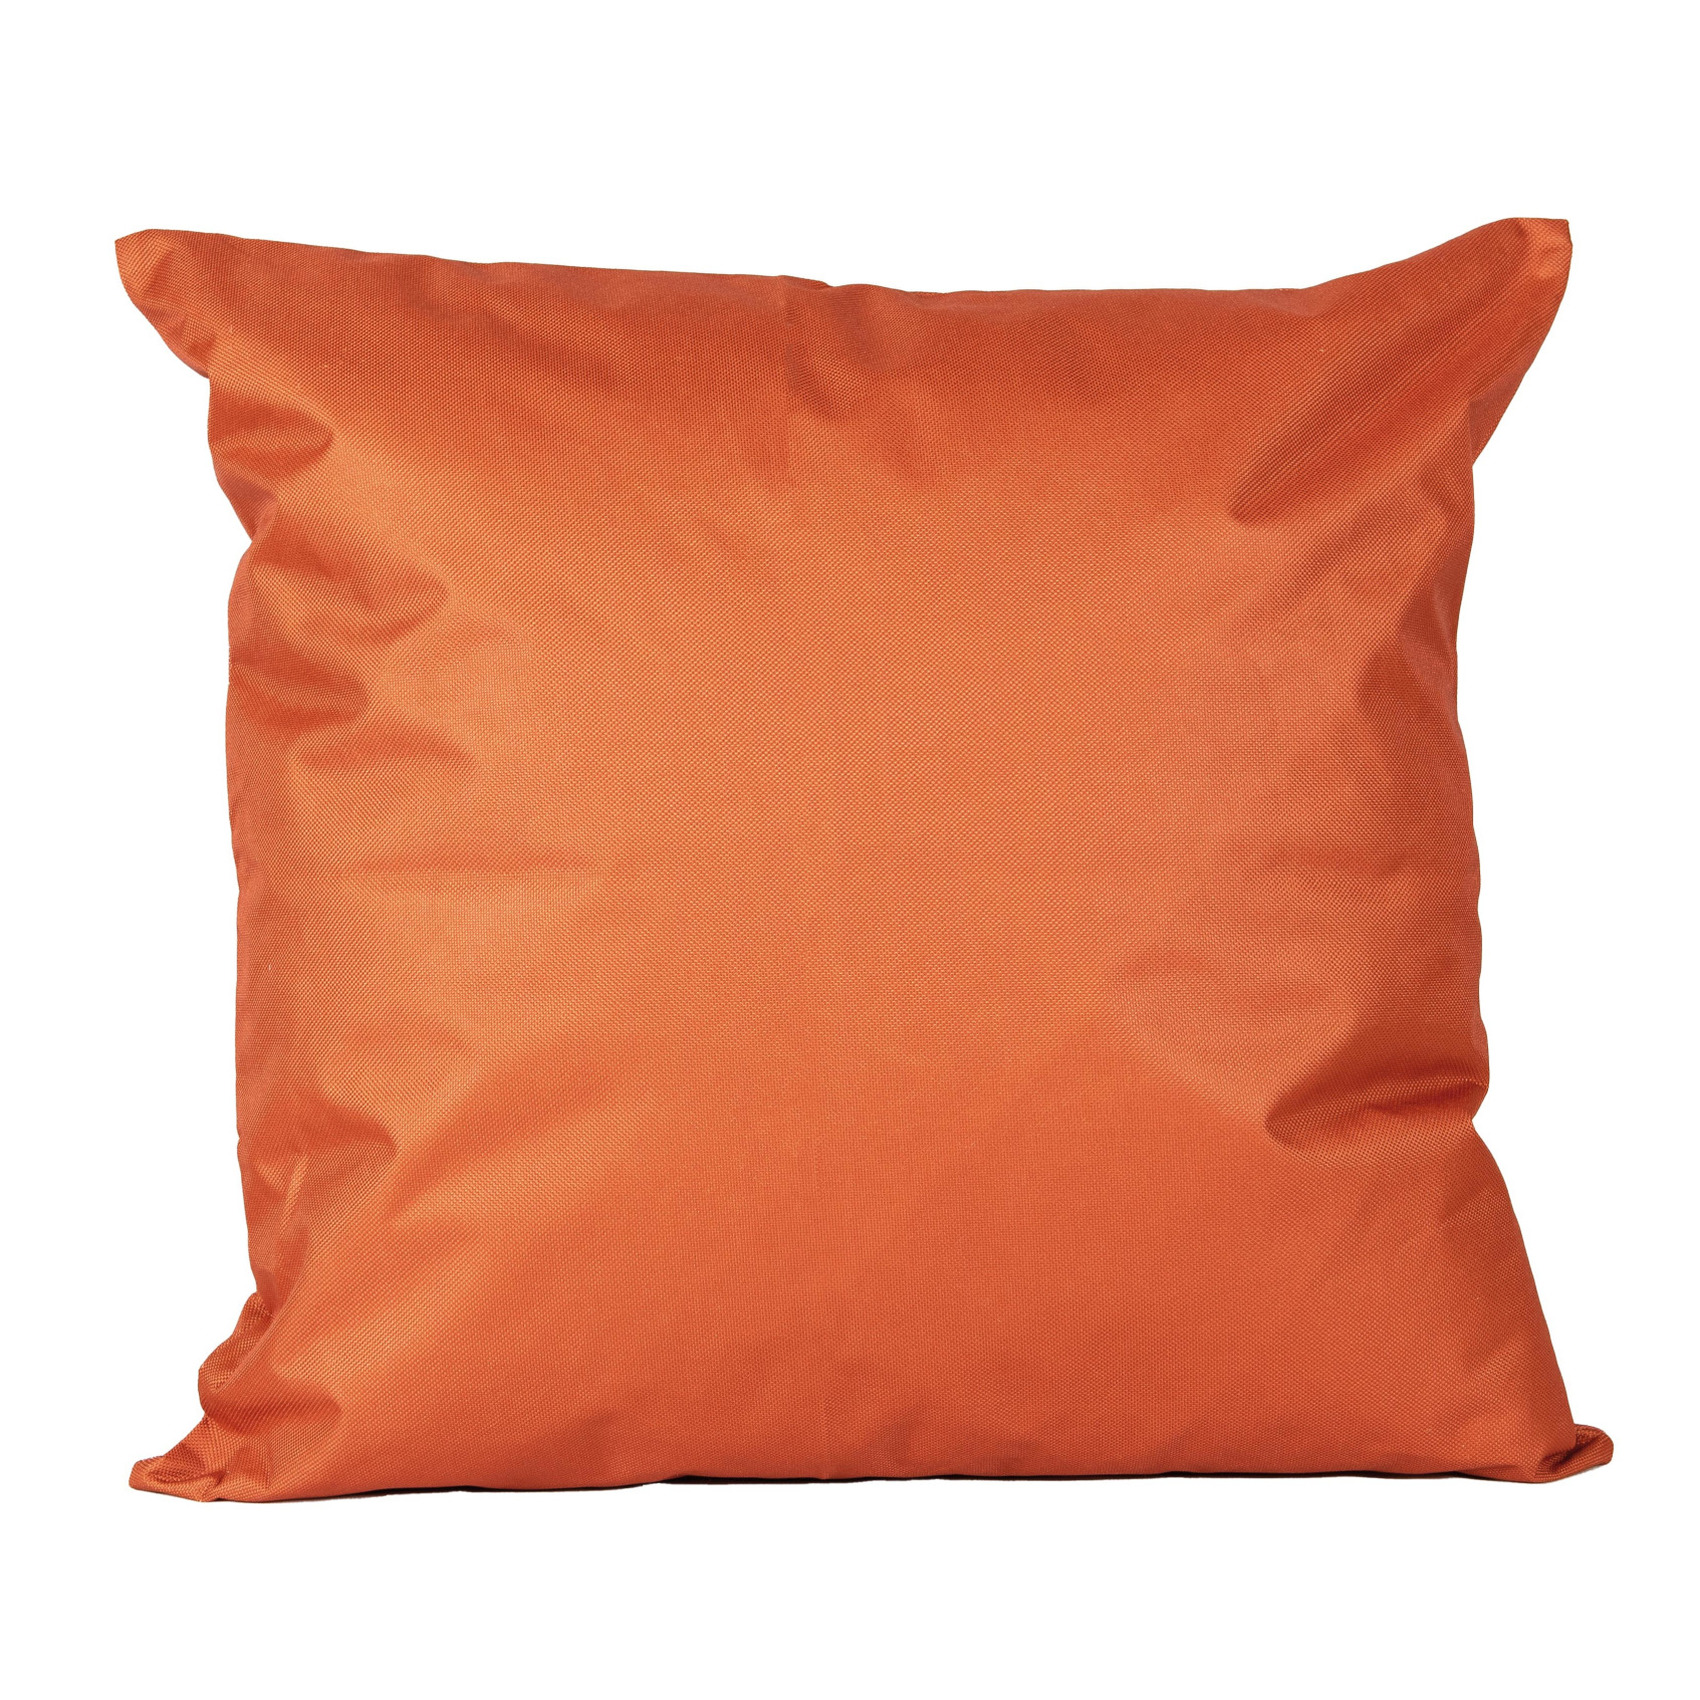 1x Bank-sier kussens voor binnen en buiten in de kleur oranje 45 x 45 cm